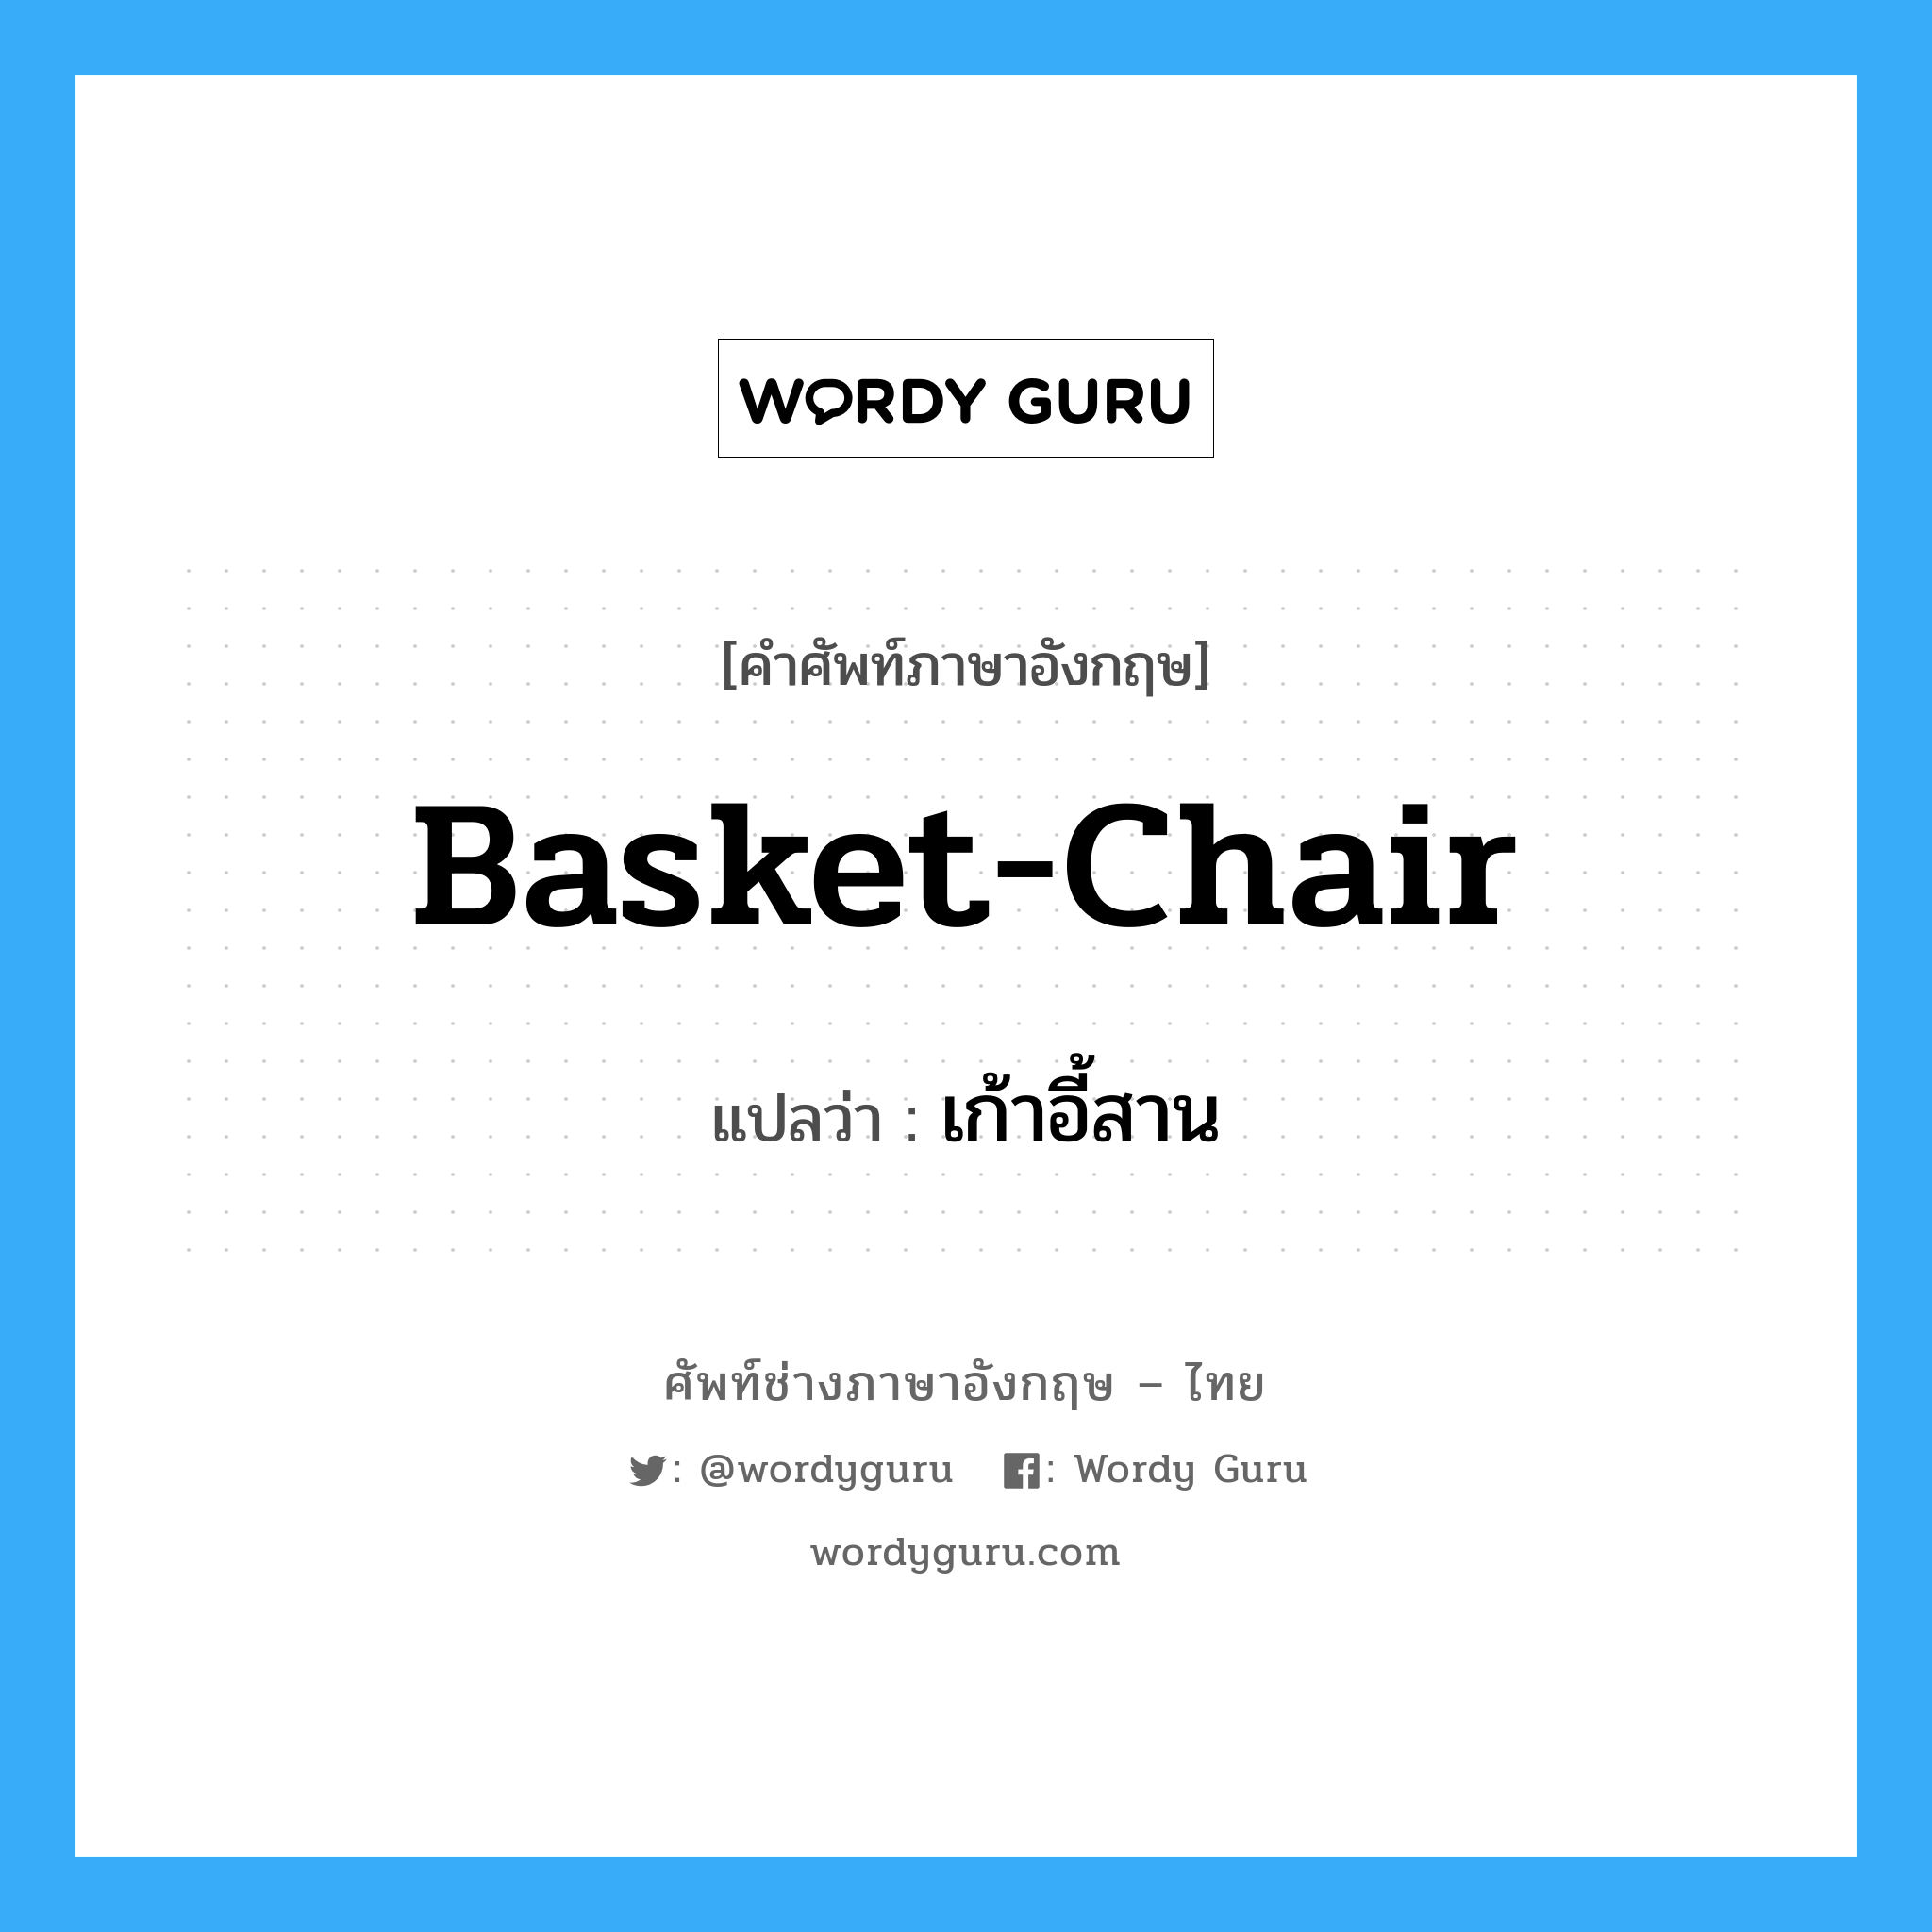 เก้าอี้สาน ภาษาอังกฤษ?, คำศัพท์ช่างภาษาอังกฤษ - ไทย เก้าอี้สาน คำศัพท์ภาษาอังกฤษ เก้าอี้สาน แปลว่า basket-chair